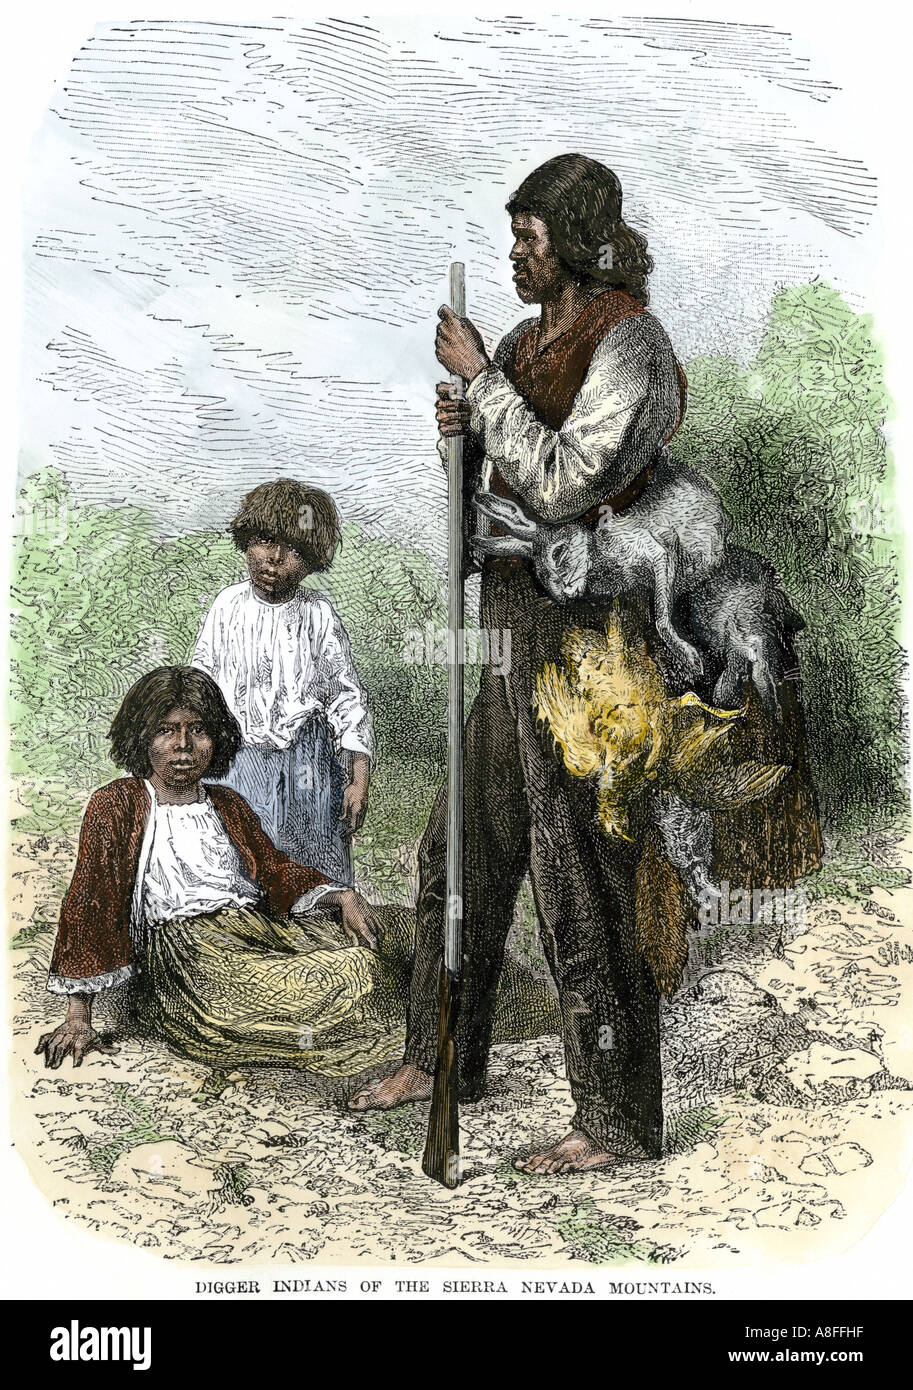 Digger Indiens revenant d'une chasse transportant des lapins et des oiseaux dans les montagnes de la Sierra Nevada des années 1800. À la main, gravure sur bois Banque D'Images